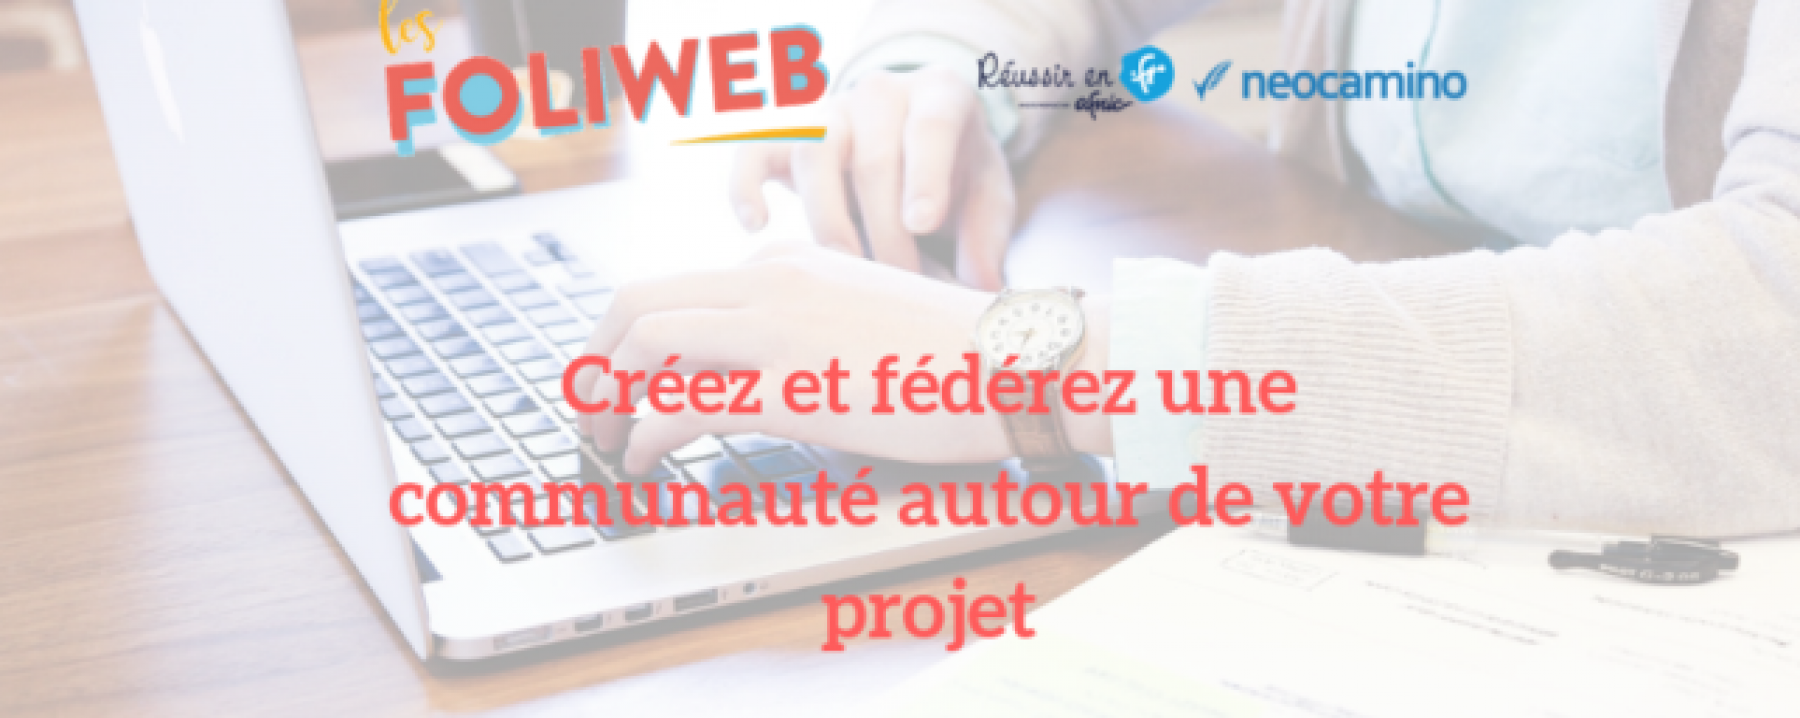 Webinar Créez et fédérez une communauté autour de votre projet, le 4 juin 2020, organisé par Les Foliweb